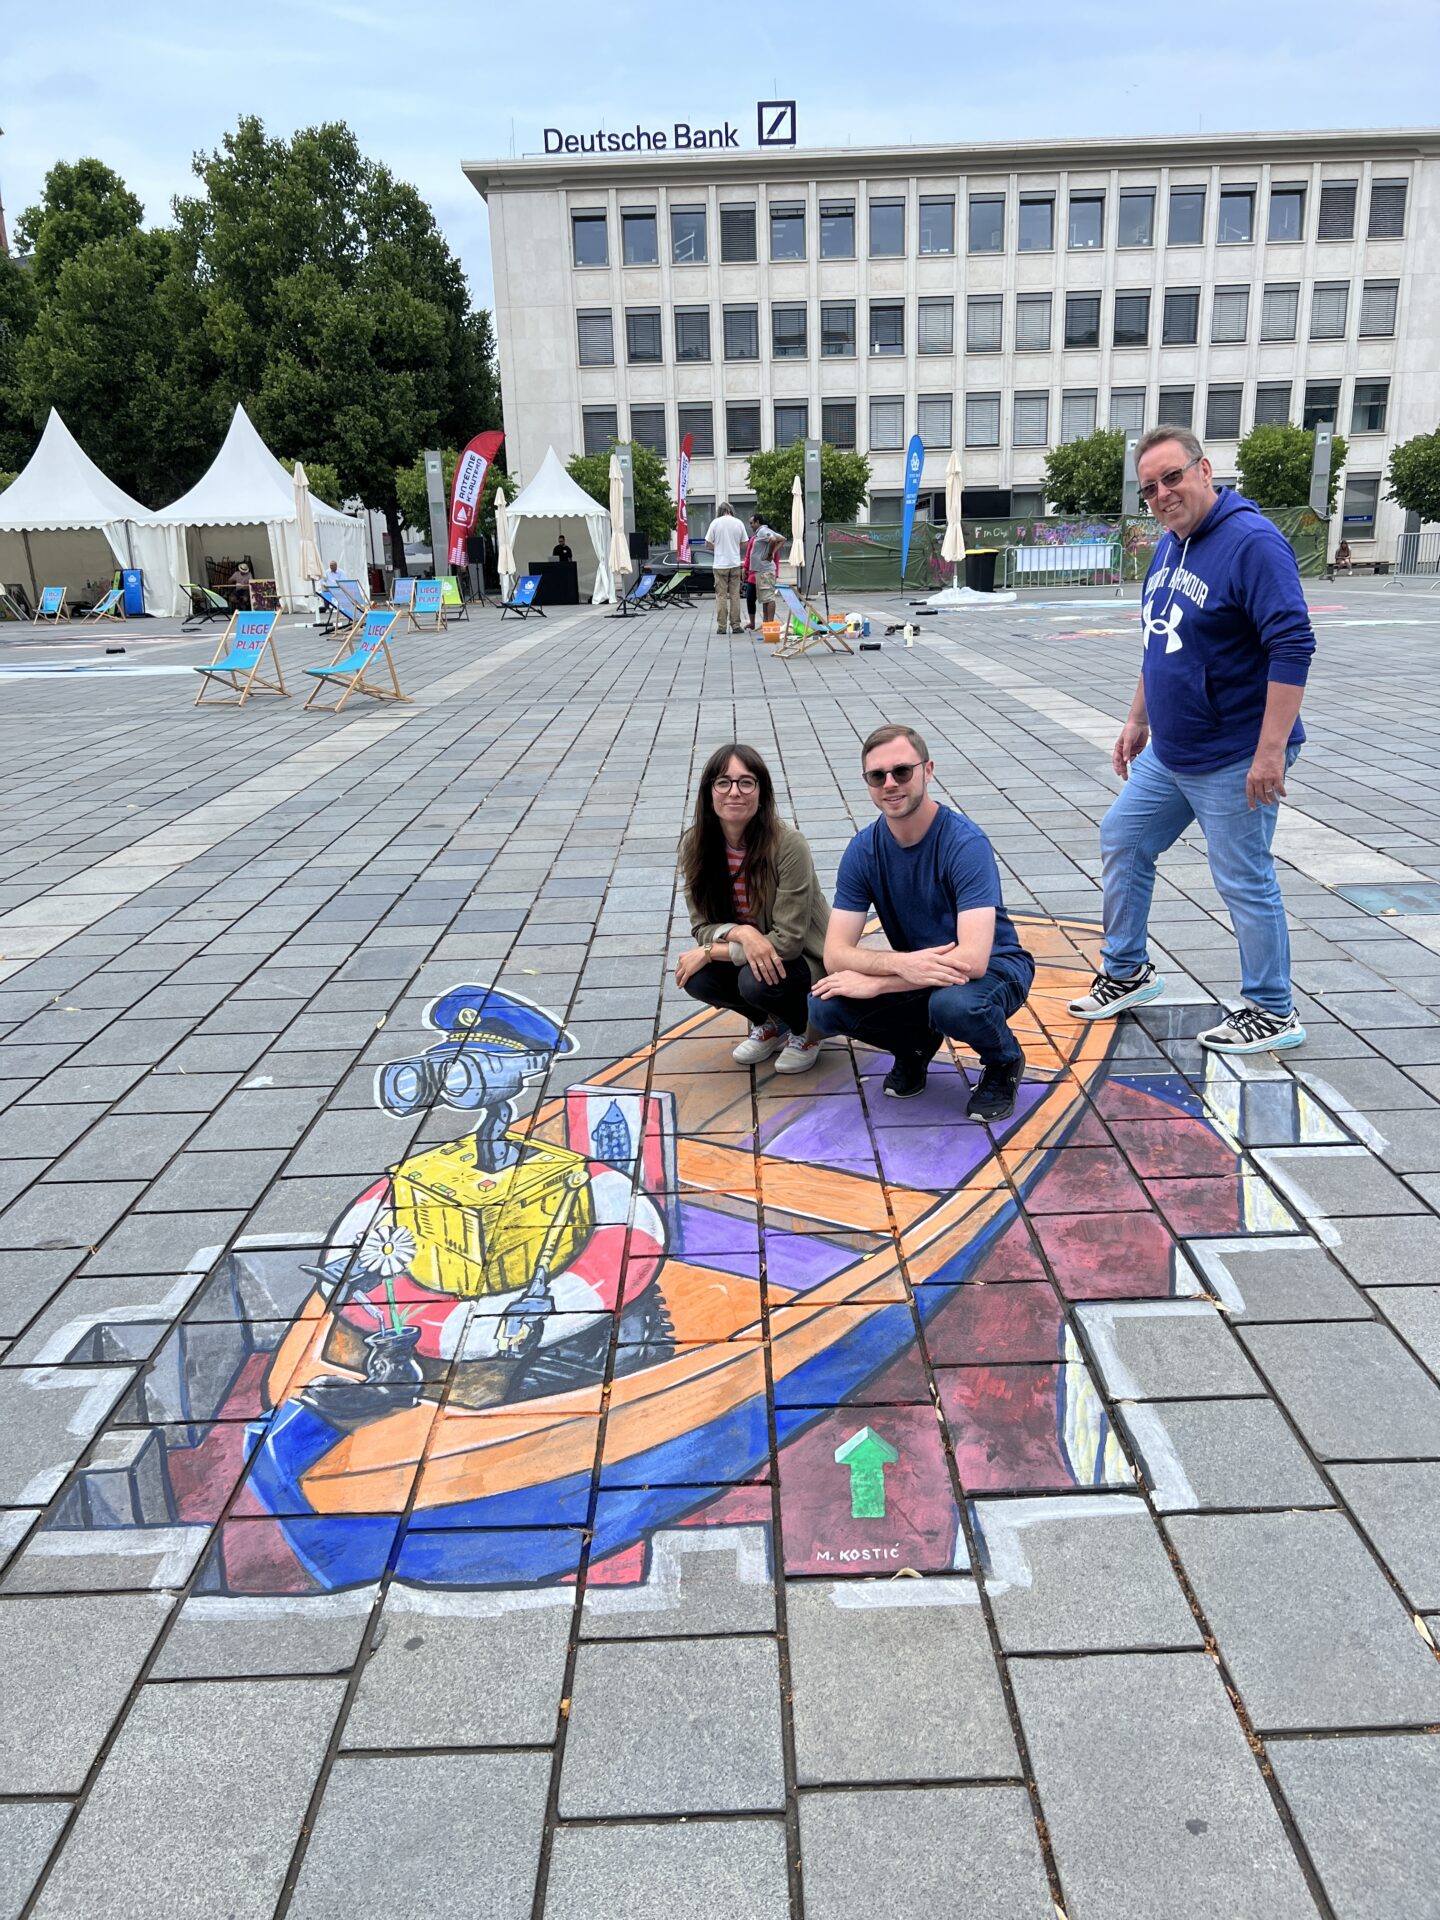 Eine Frau und zwei Männer posieren auf einem Straßenkunstwerk auf einem öffentlichen Platz. Das Kunstwerk zeigt ein Boot, das von einer Art Roboter gesteuert wird.